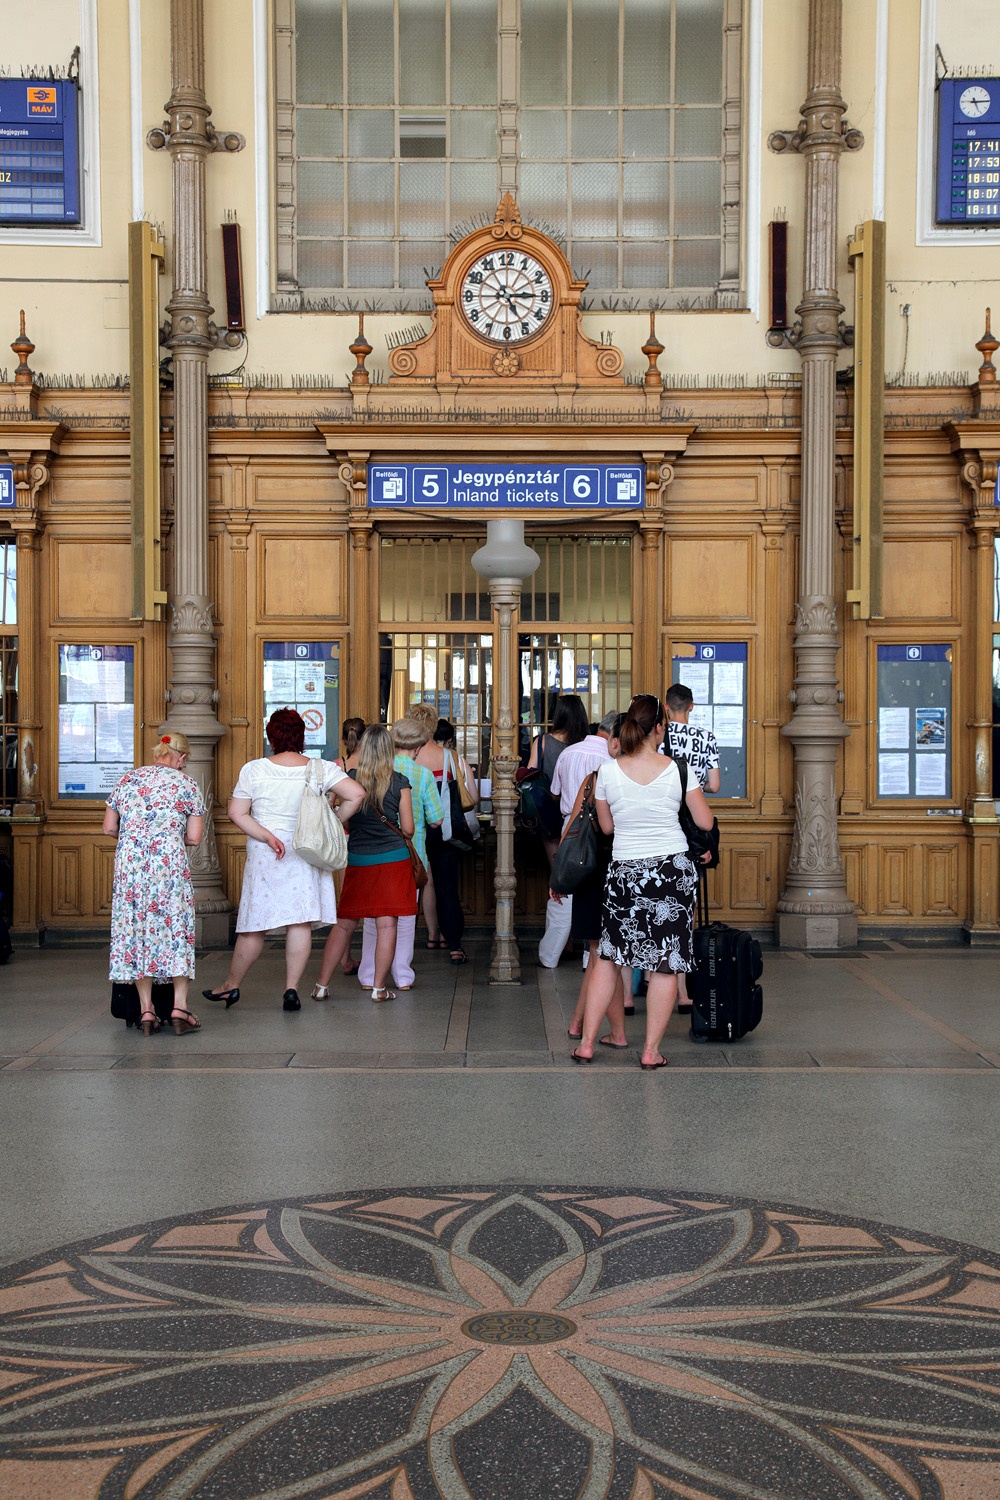 bill-hocker-nyugati-train-station-budapest-hungary-2013